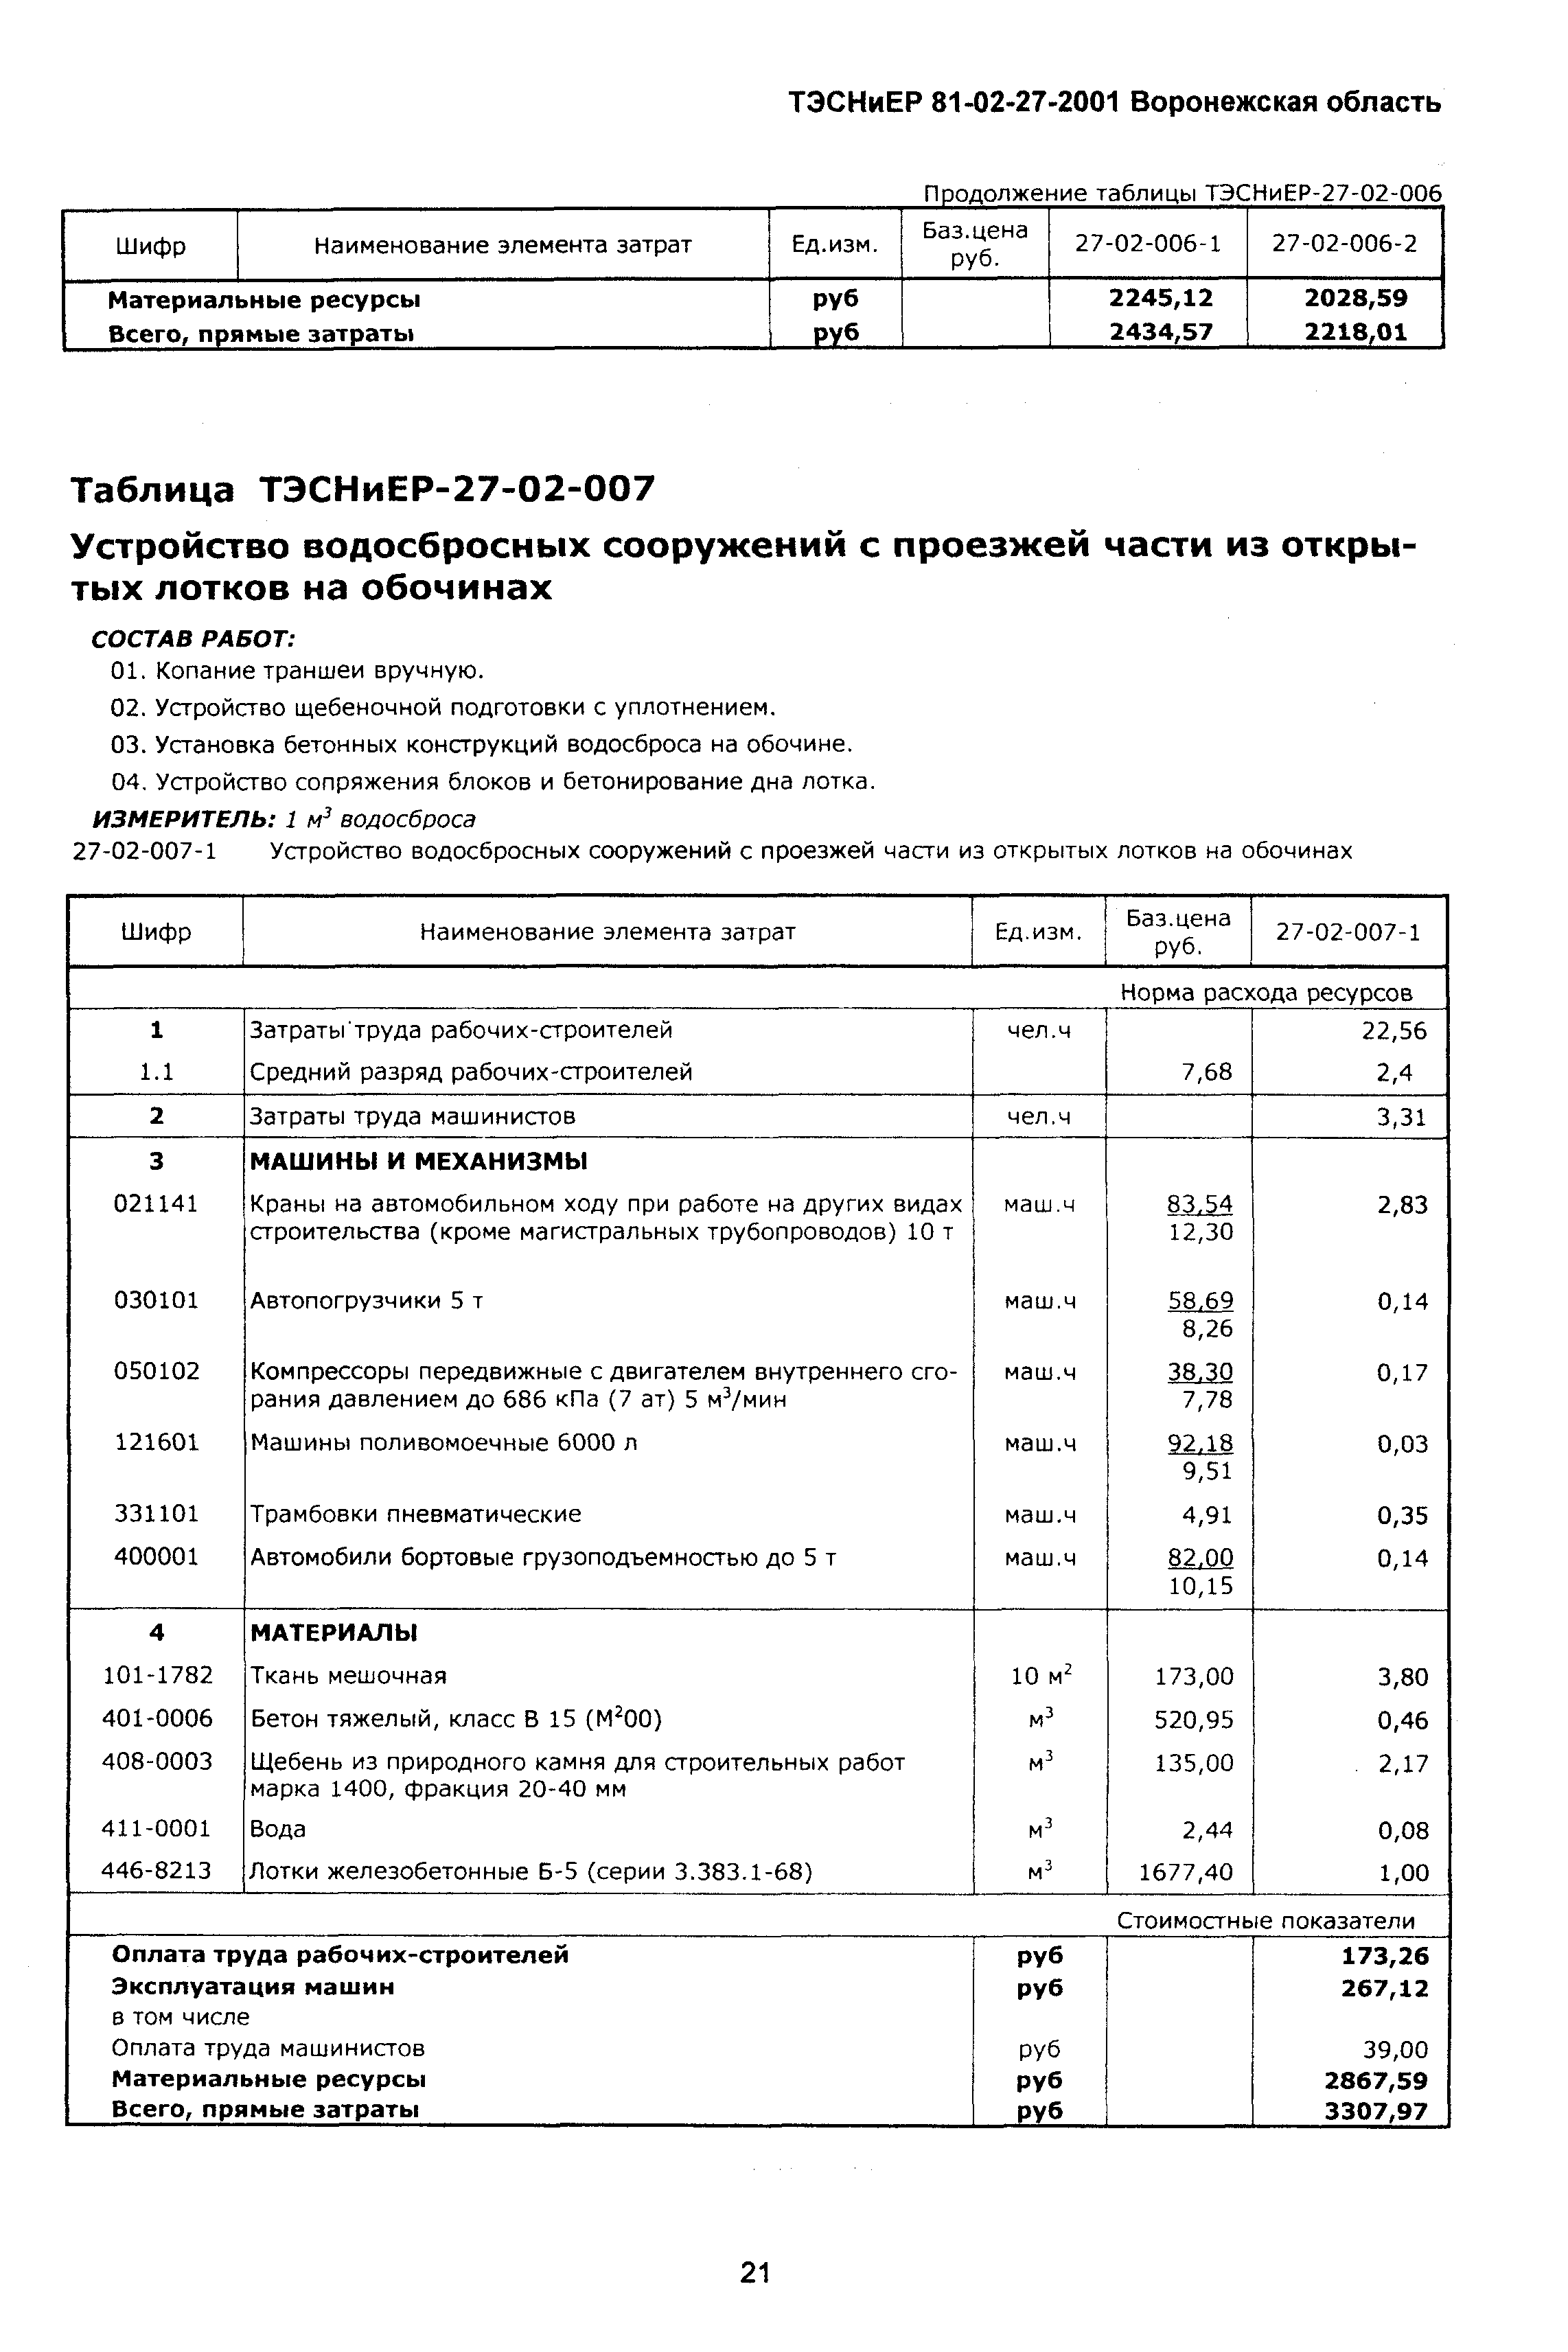 ТЭСНиЕР Воронежской области 81-02-27-2001